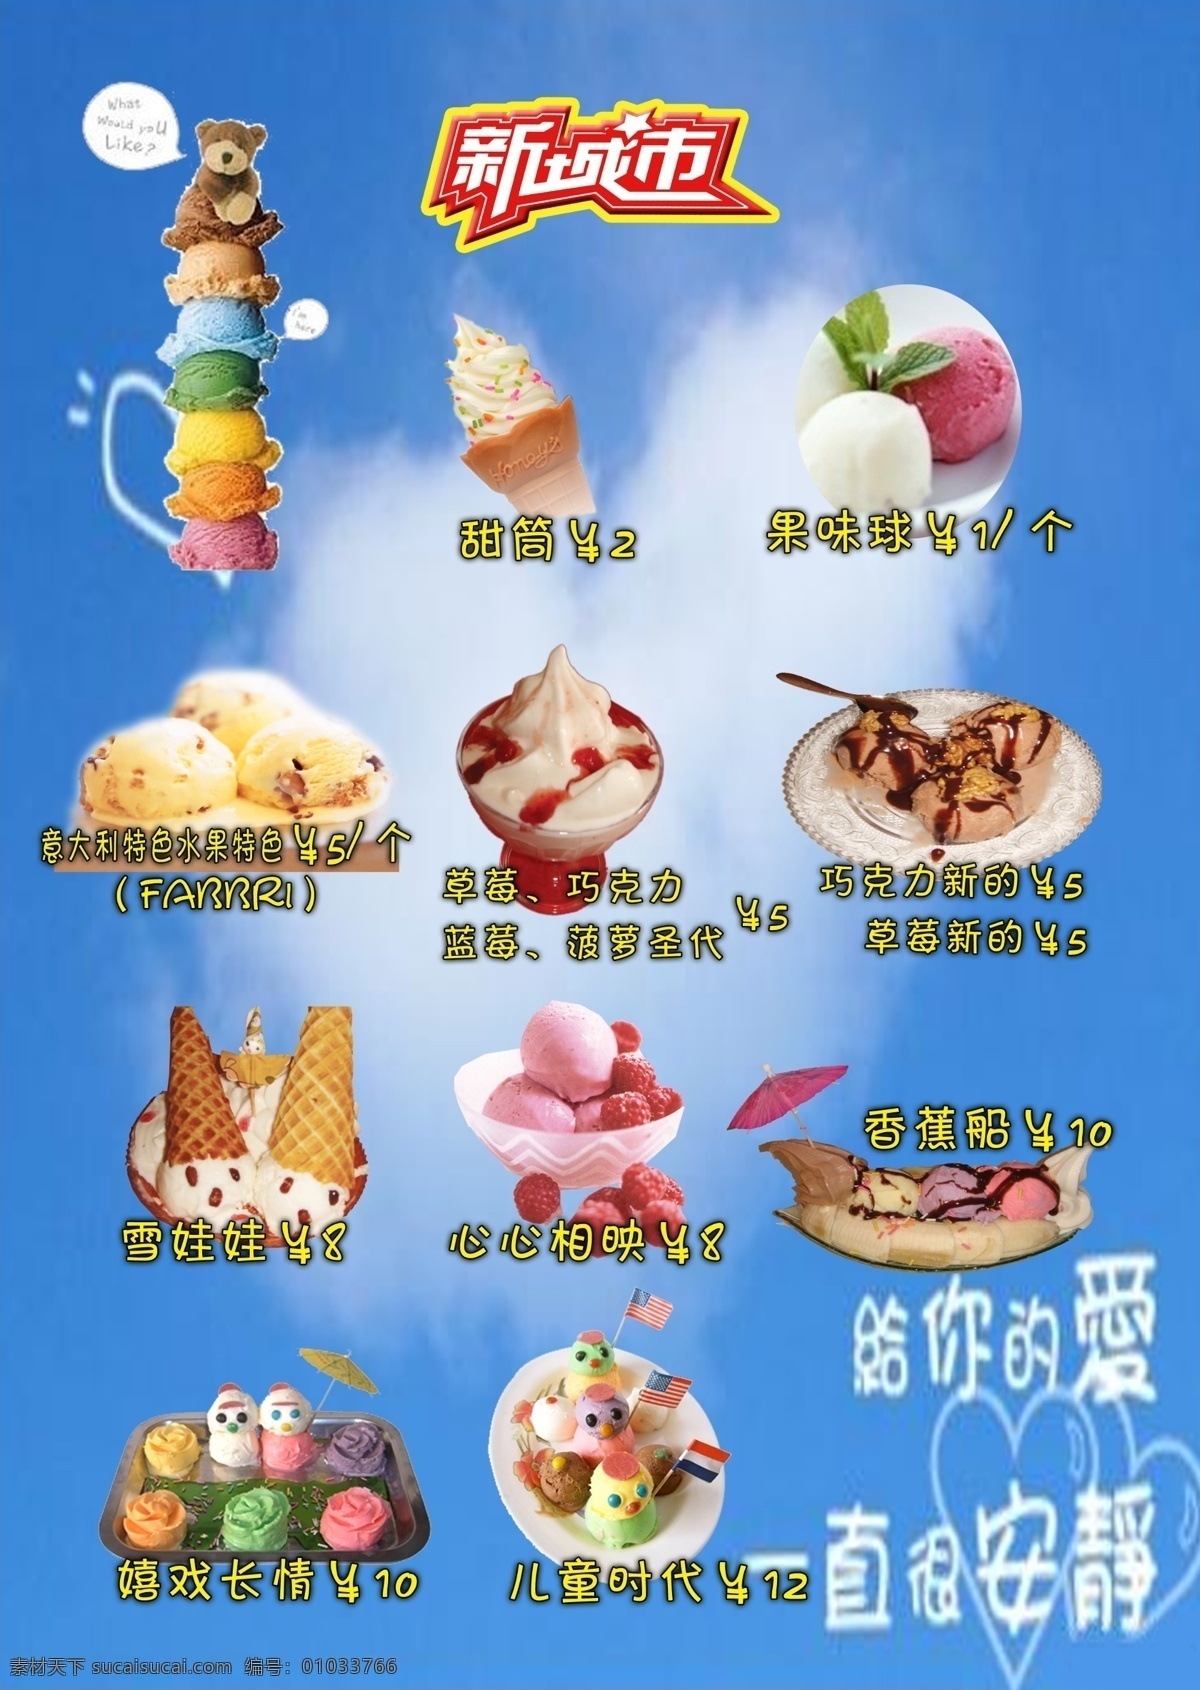 意大利 冰淇淋 甜品 饮料 店 花样冰淇淋 蛋卷冰淇淋 香蕉船 展板模板 分层 源文件